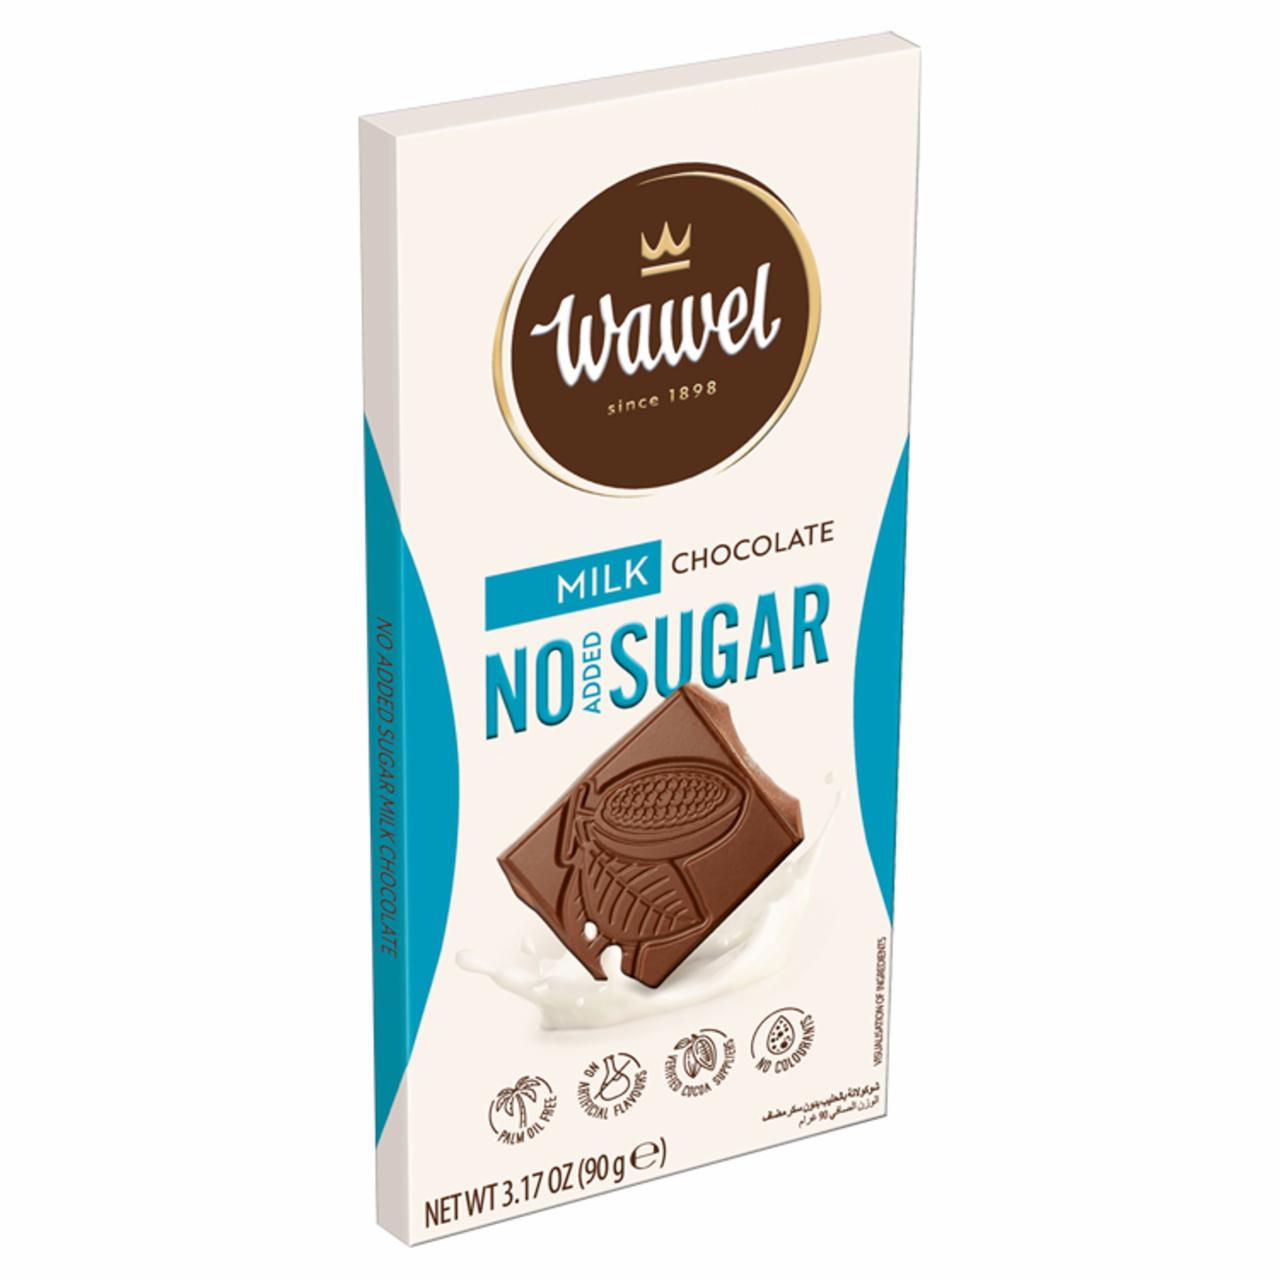 Képek - Wawel tejcsokoládé hozzáadott cukor nélkül, édesítőszerrel 90 g